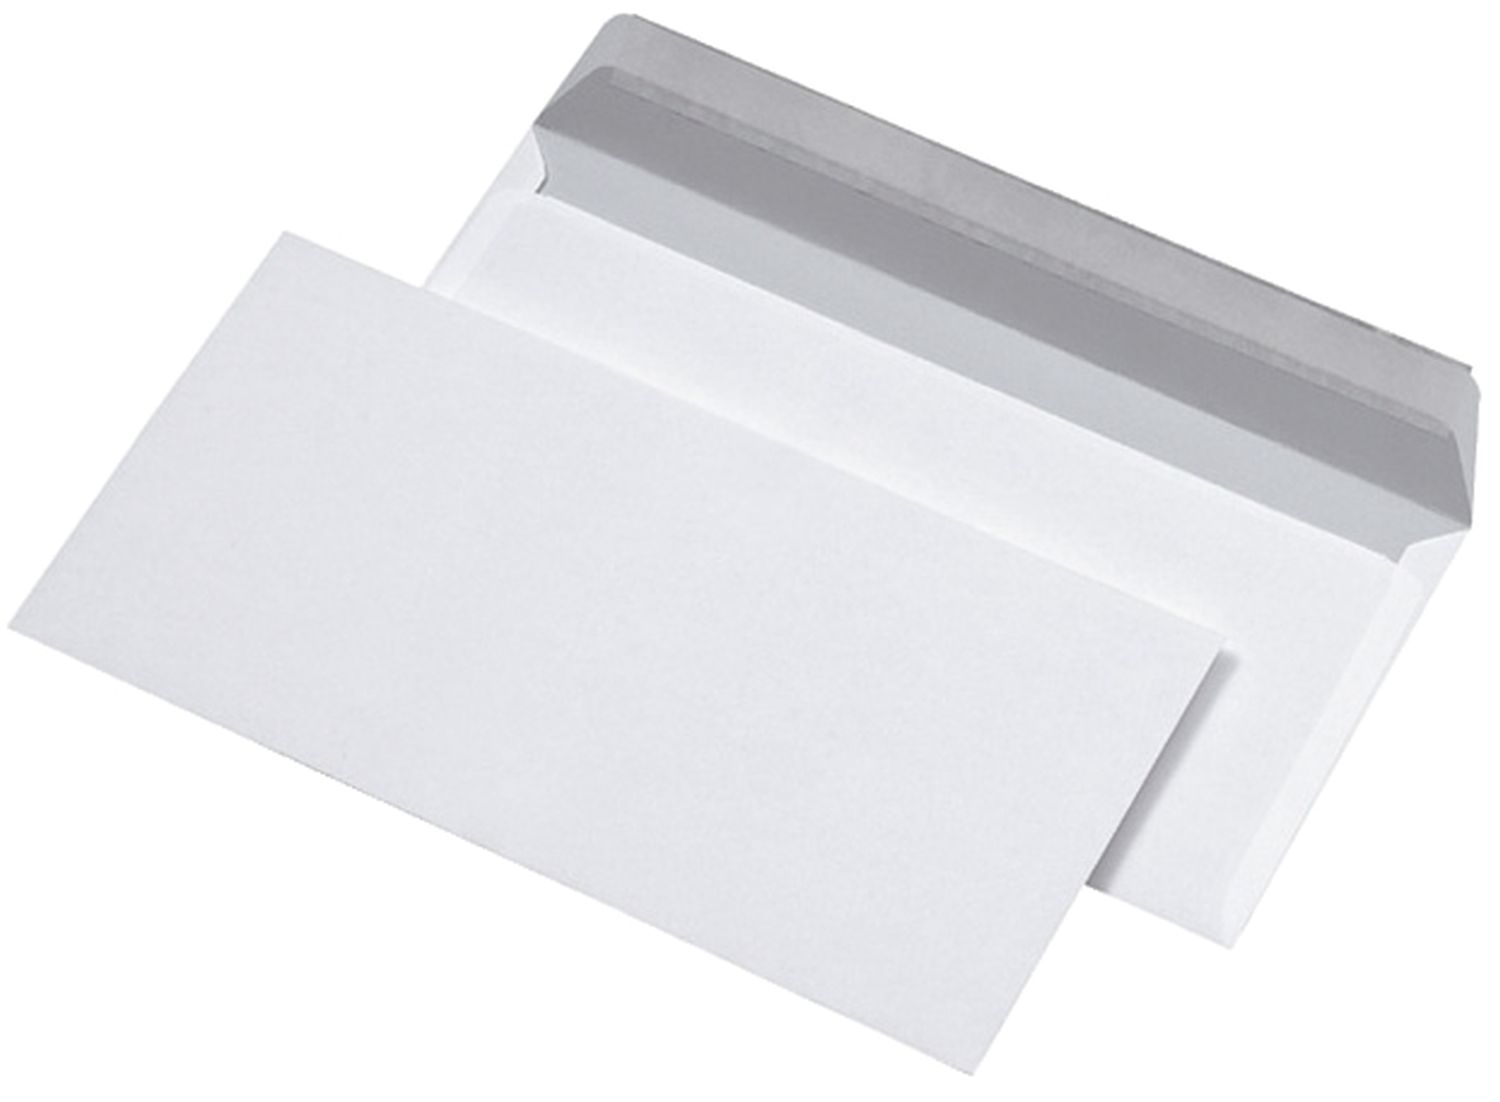 Briefumschläge MAILmedia® 30005327, DIN lang (220x110 mm), ohne Fenster, haftklebend, 80 g/qm, 1.000 Stück